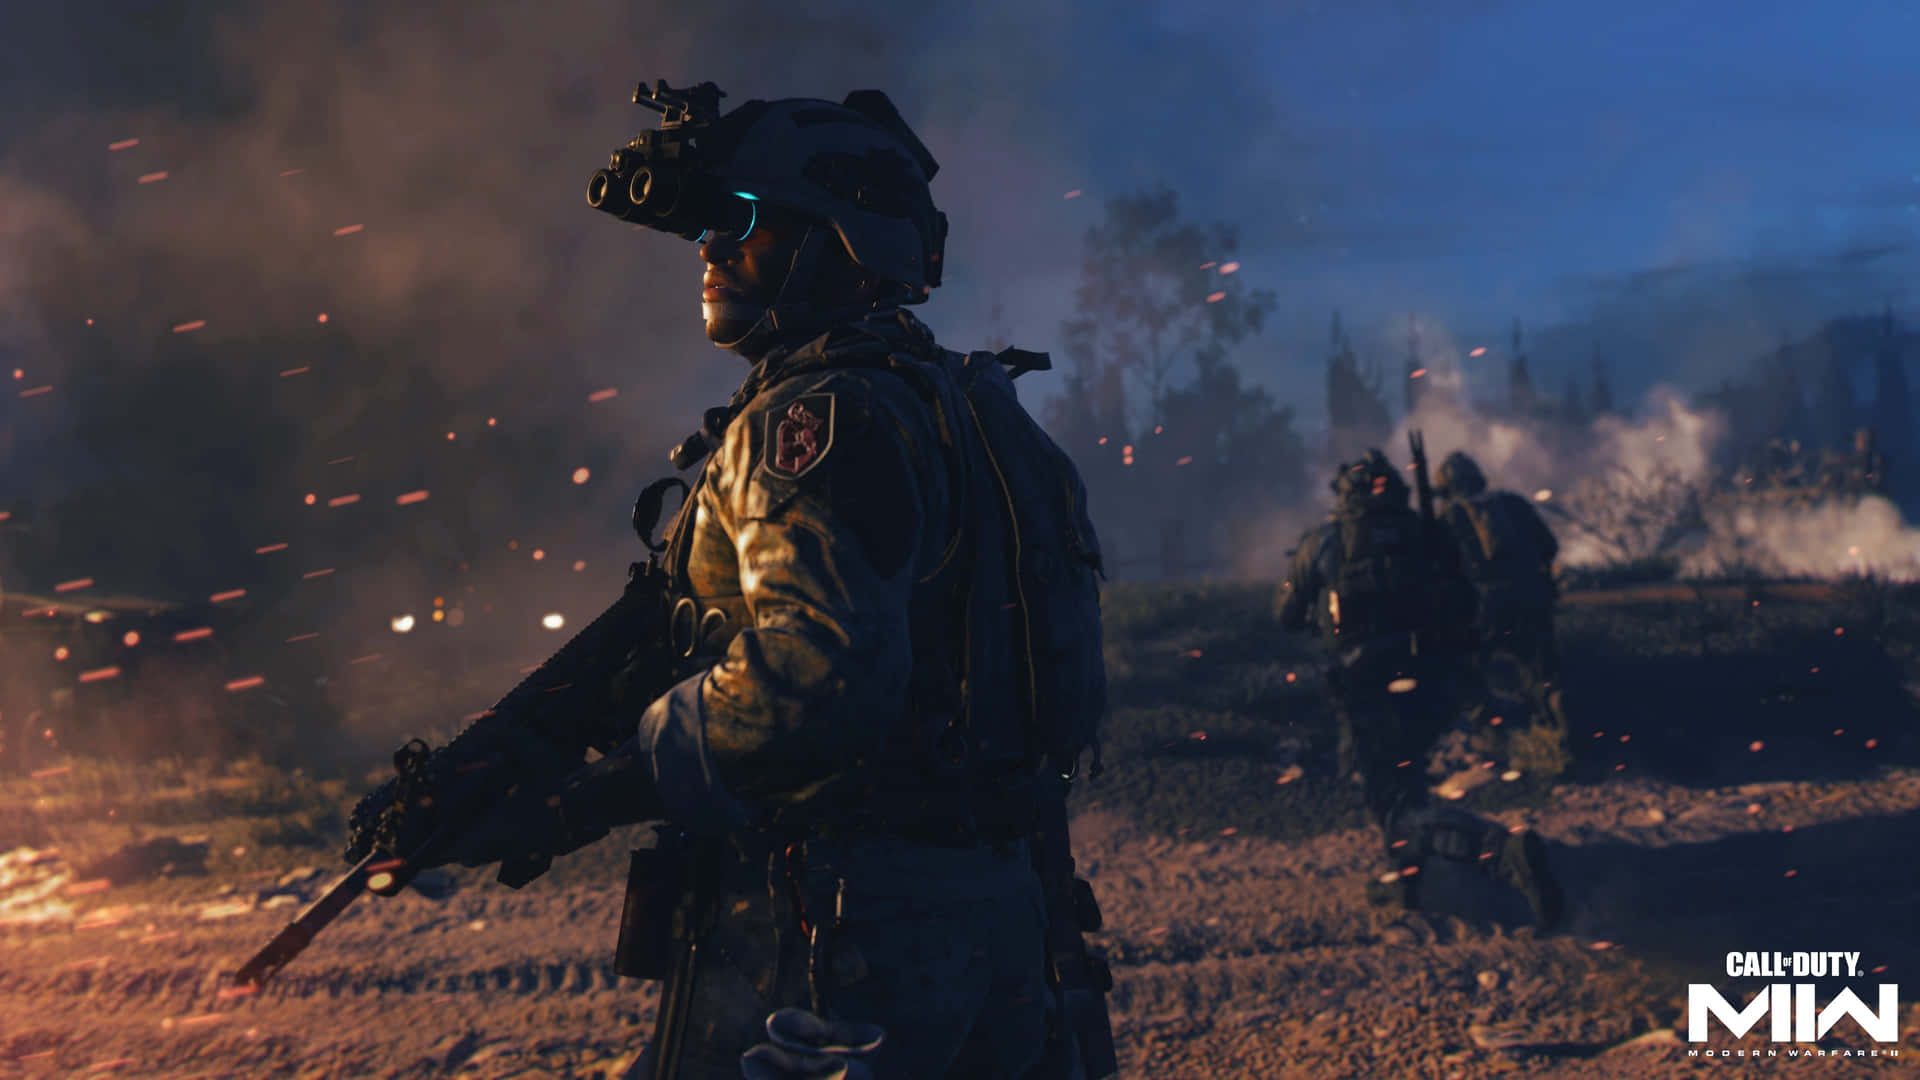 4kcall Of Duty Modern Warfare Bakgrund Man Med Kikare